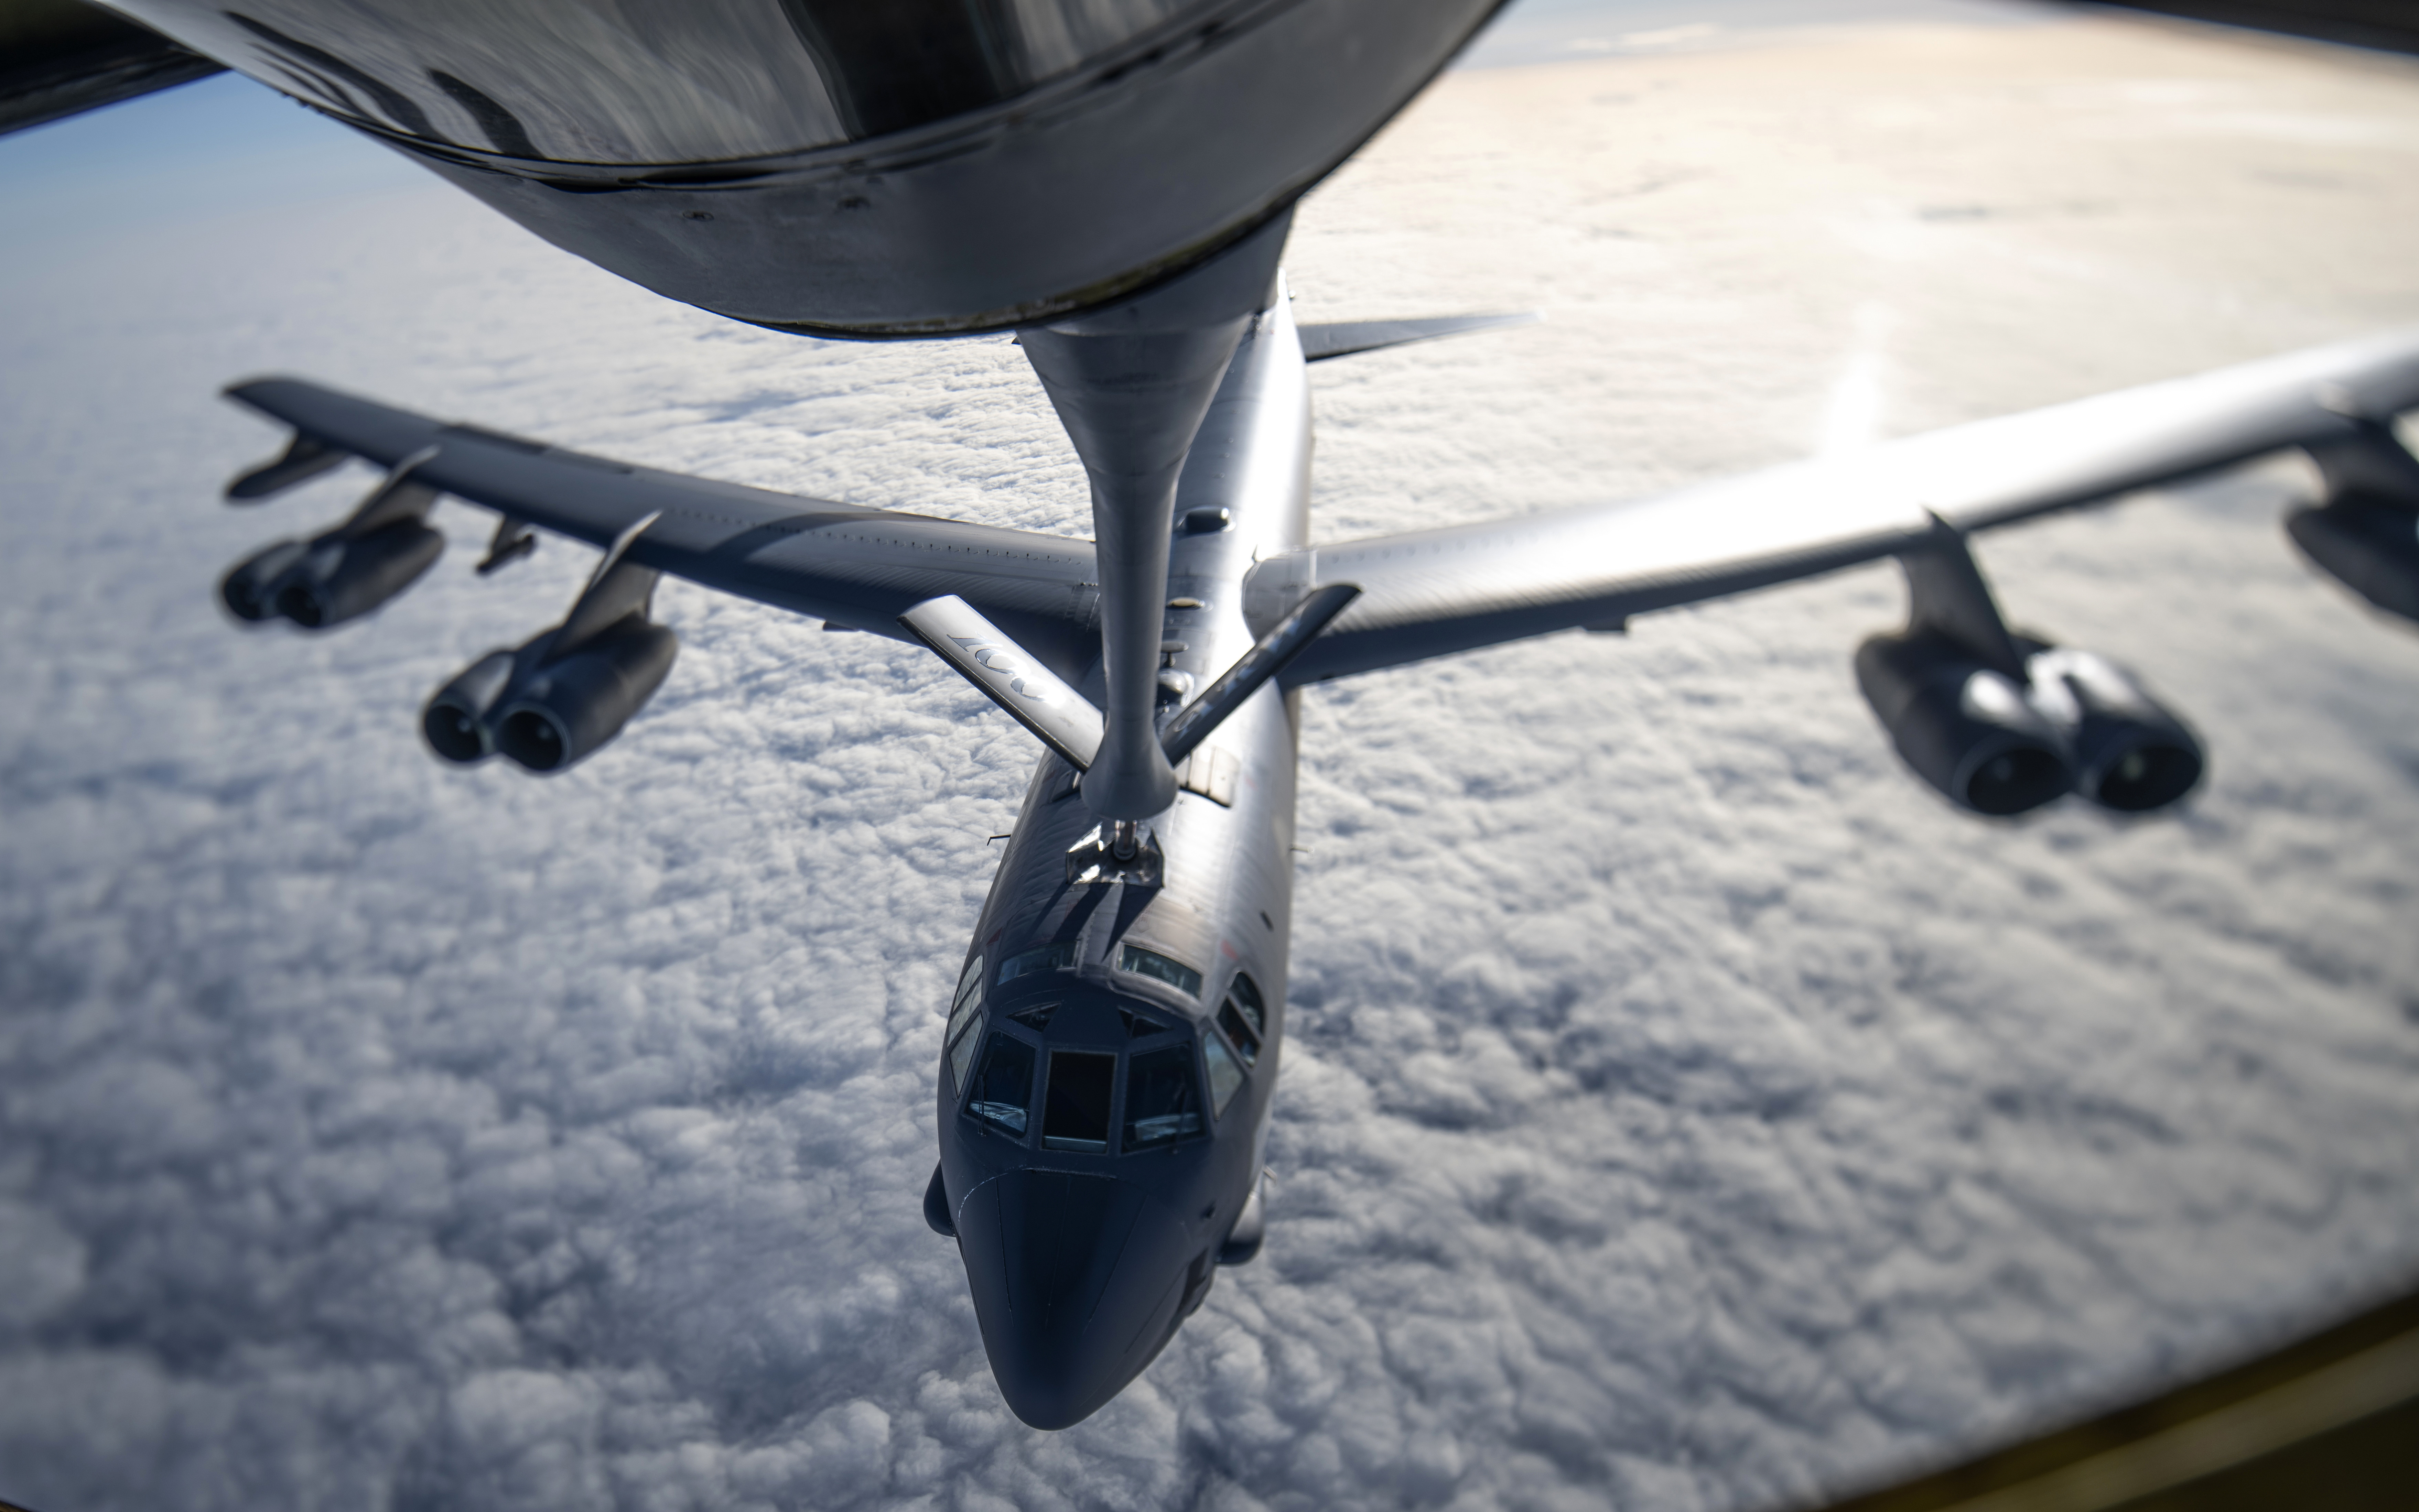 U.S. Strategic Command Conducts Long-Range Strategic Bomber Mission